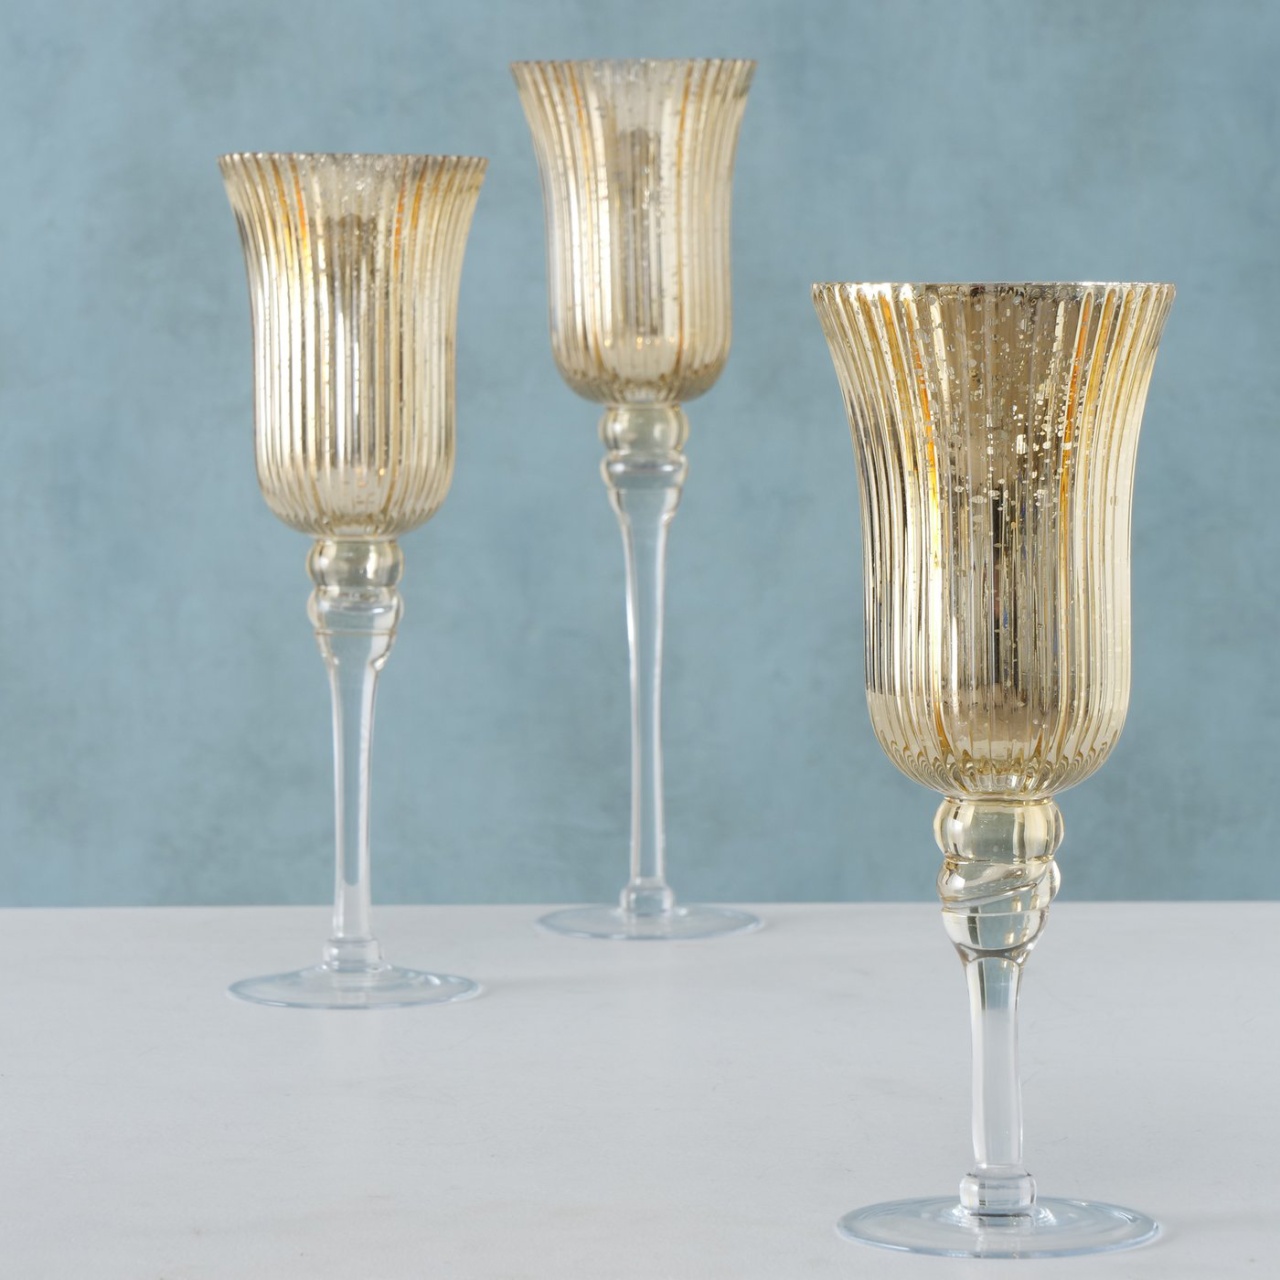 Windlicht Kelch Kerzenständer Glas lackiert golden H: 35 cm